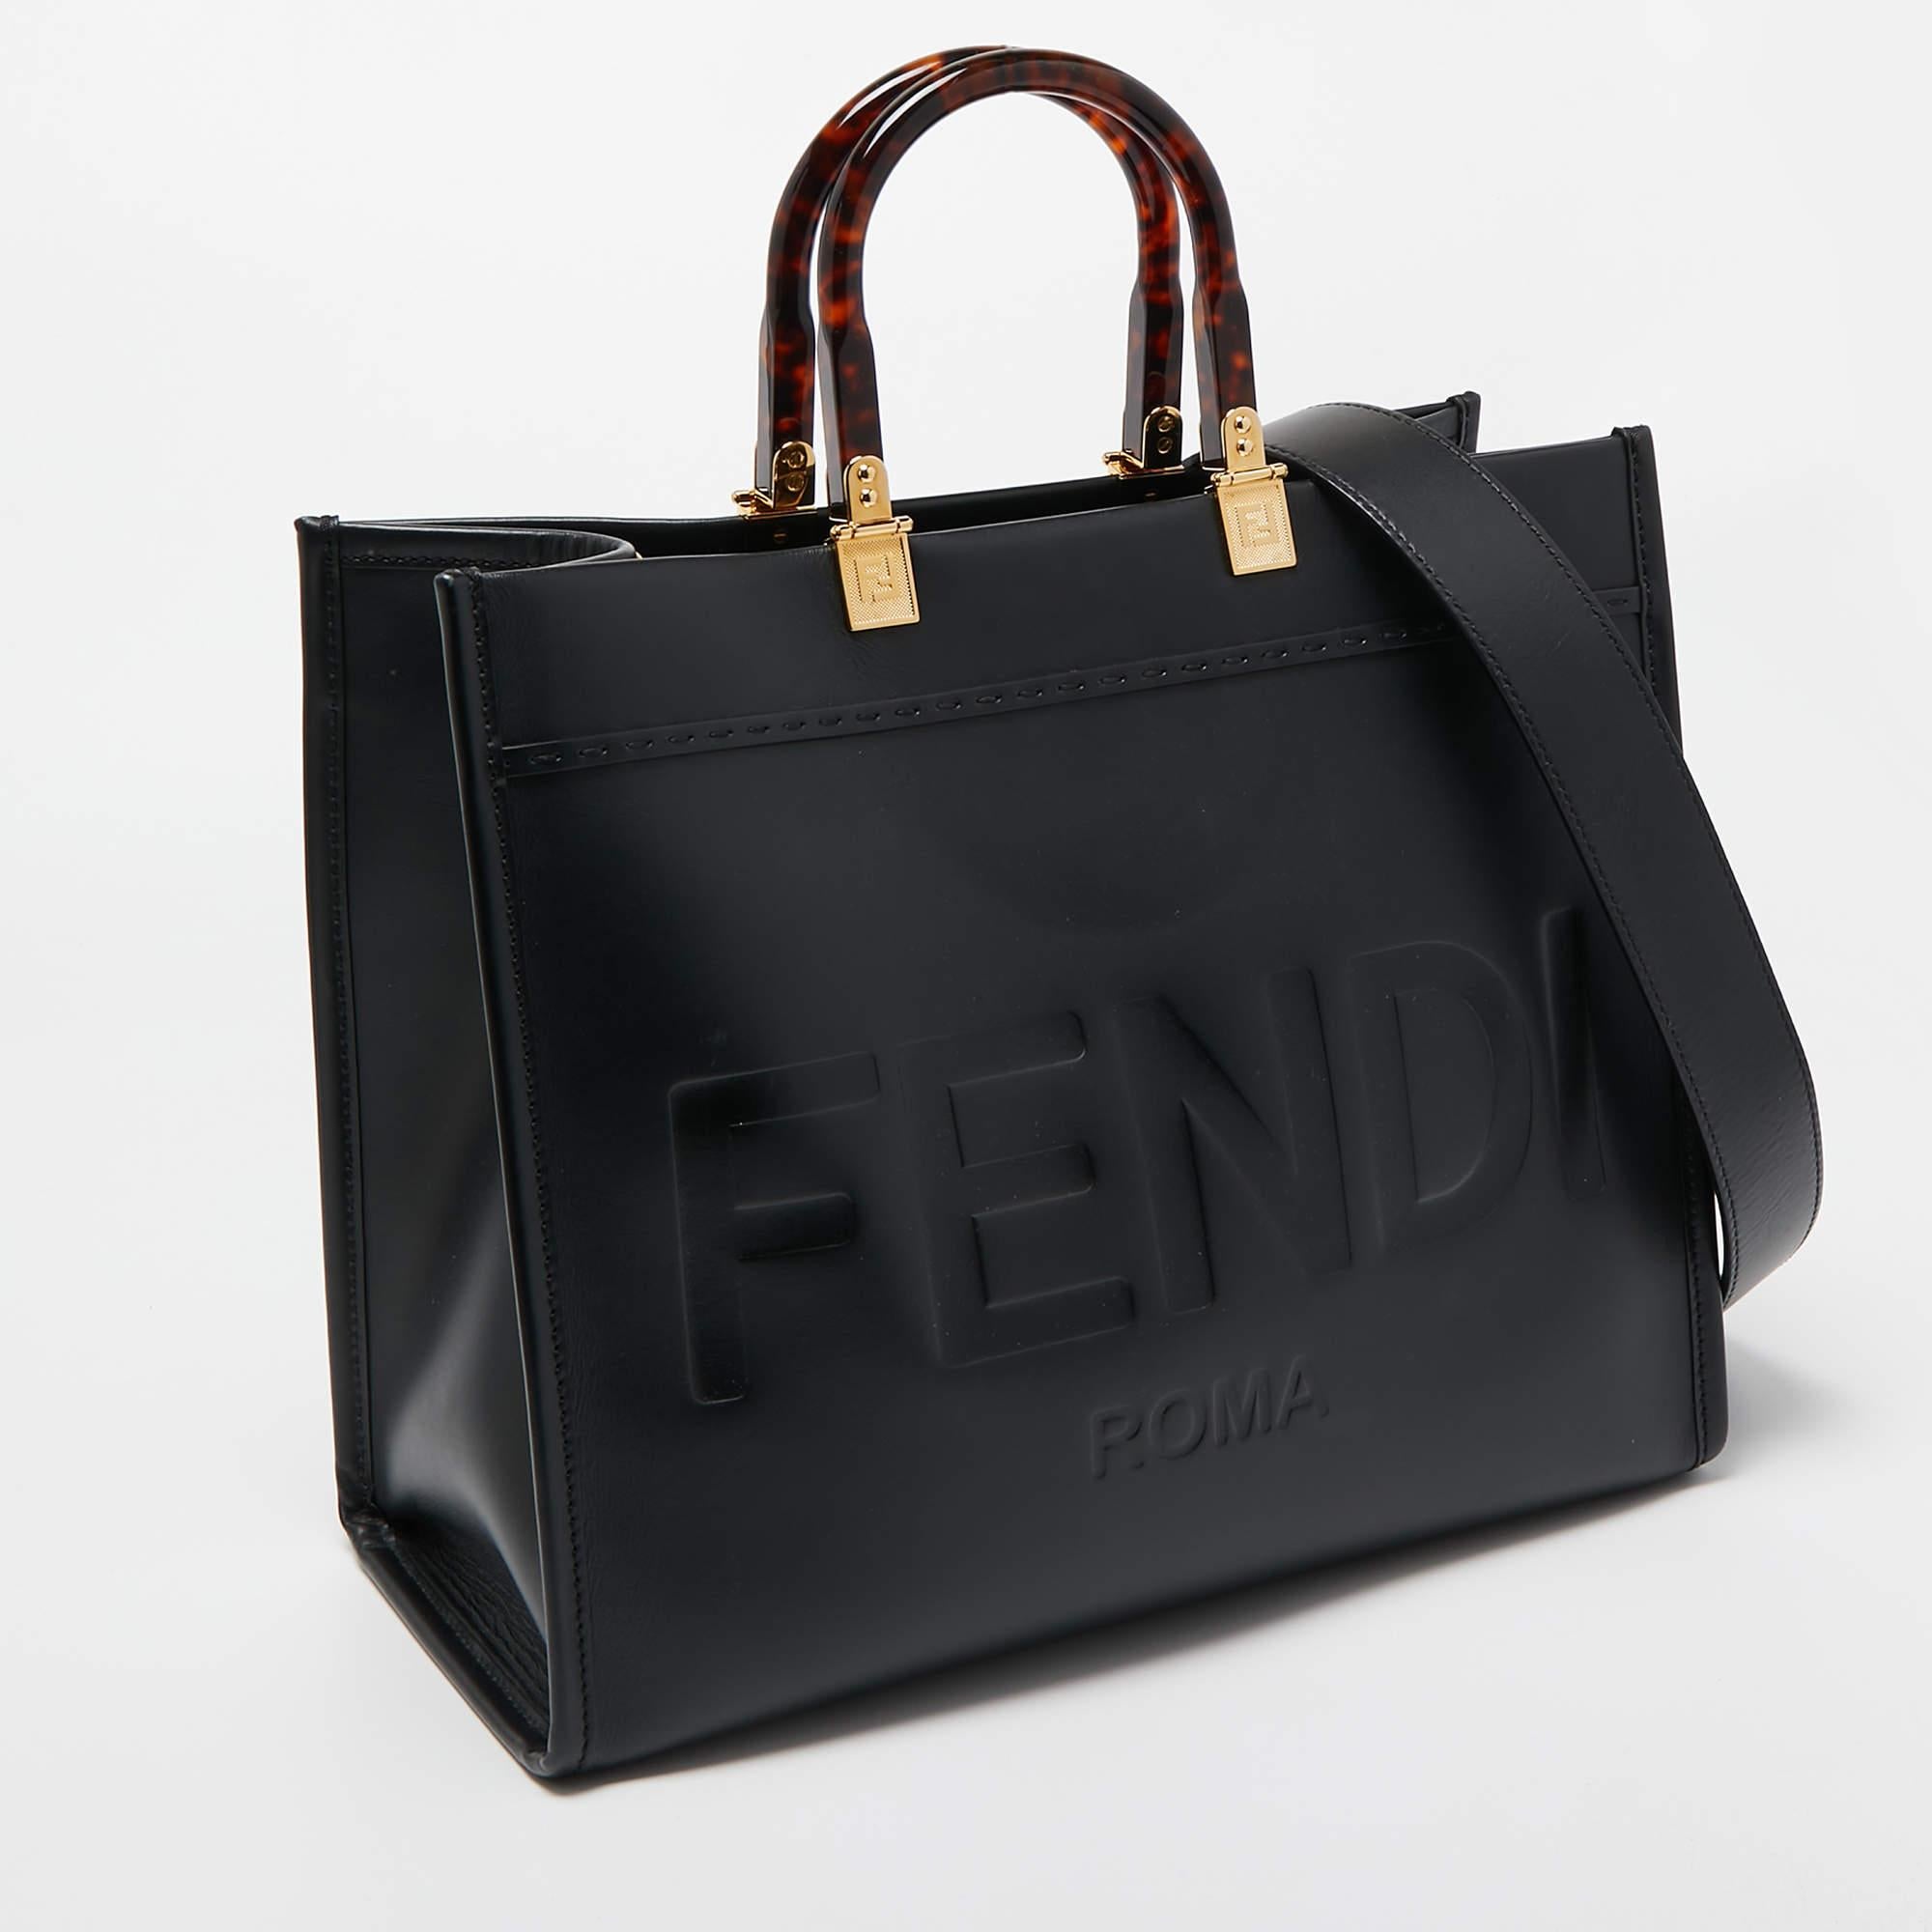 Fendi Black Leather Medium Sunshine Shopper Tote In Good Condition For Sale In Dubai, Al Qouz 2